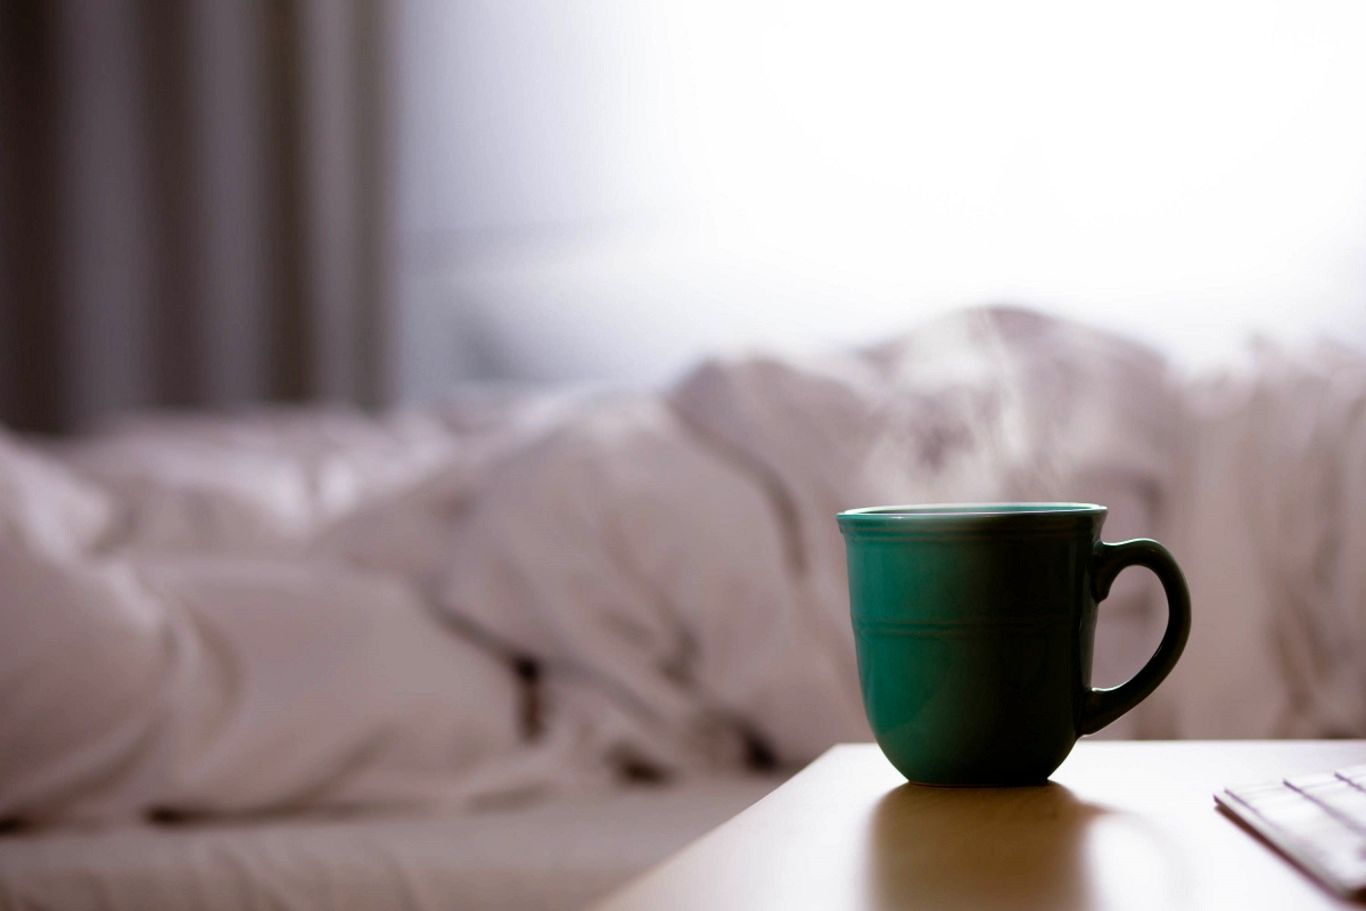 ۶ راهِ بیدار شدن بدون قهوه